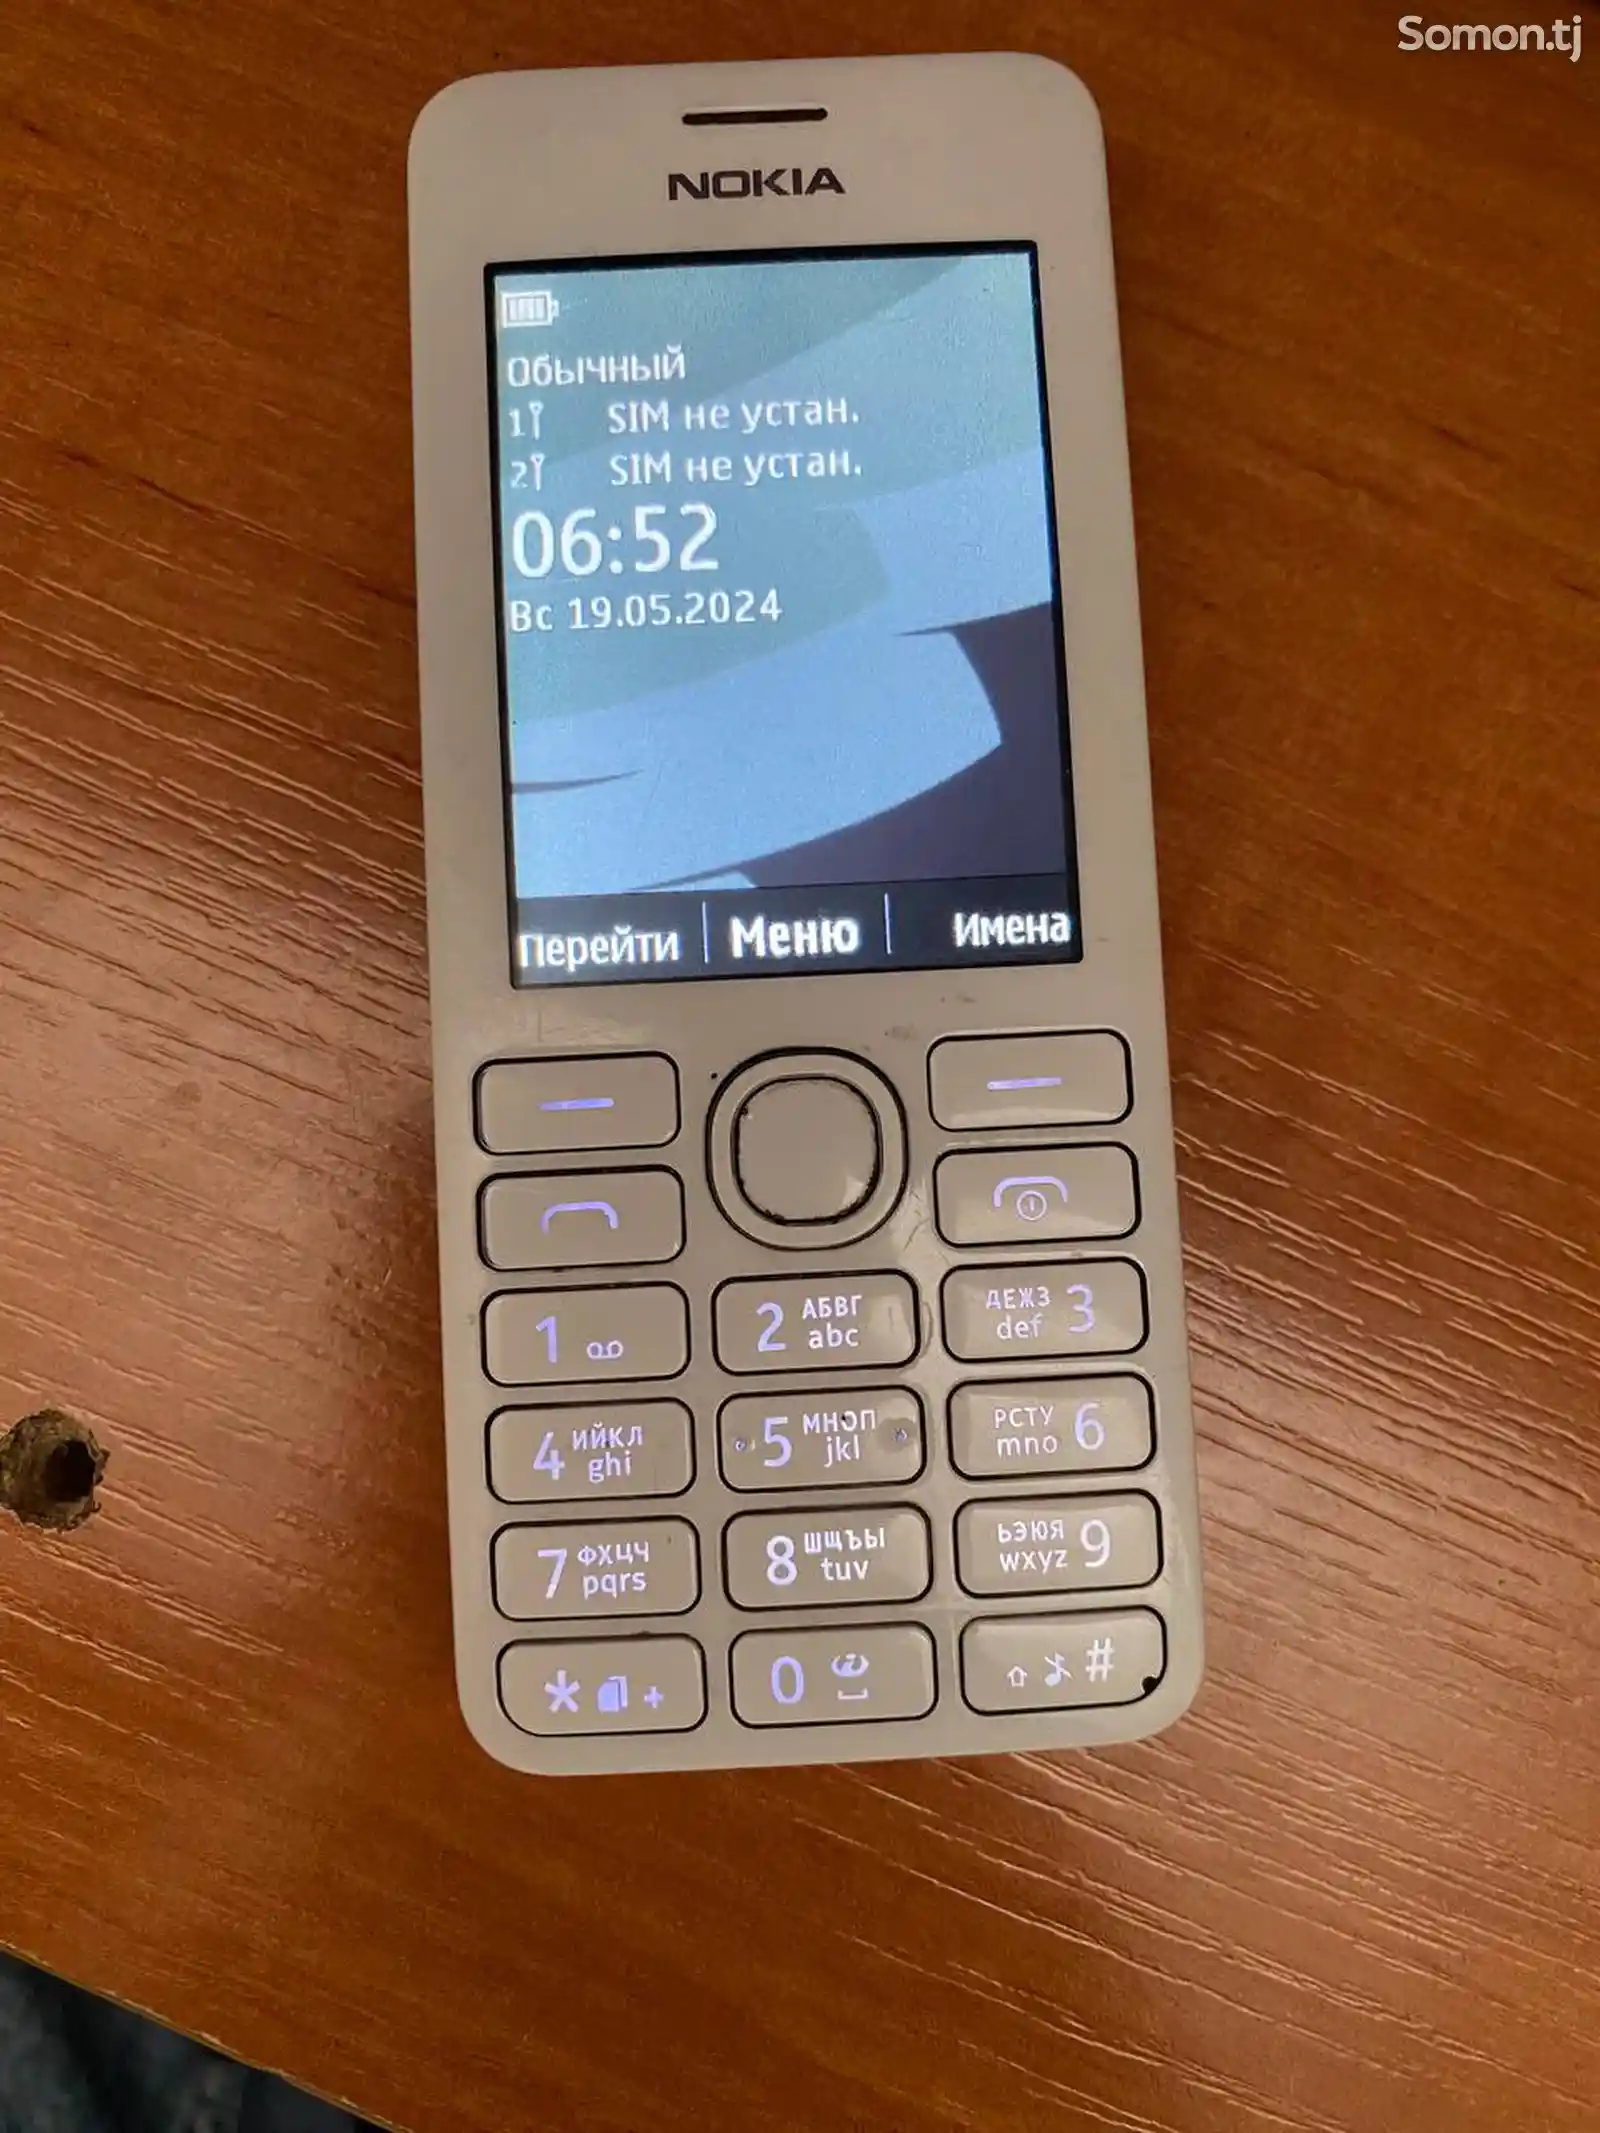 Nokia 206-1